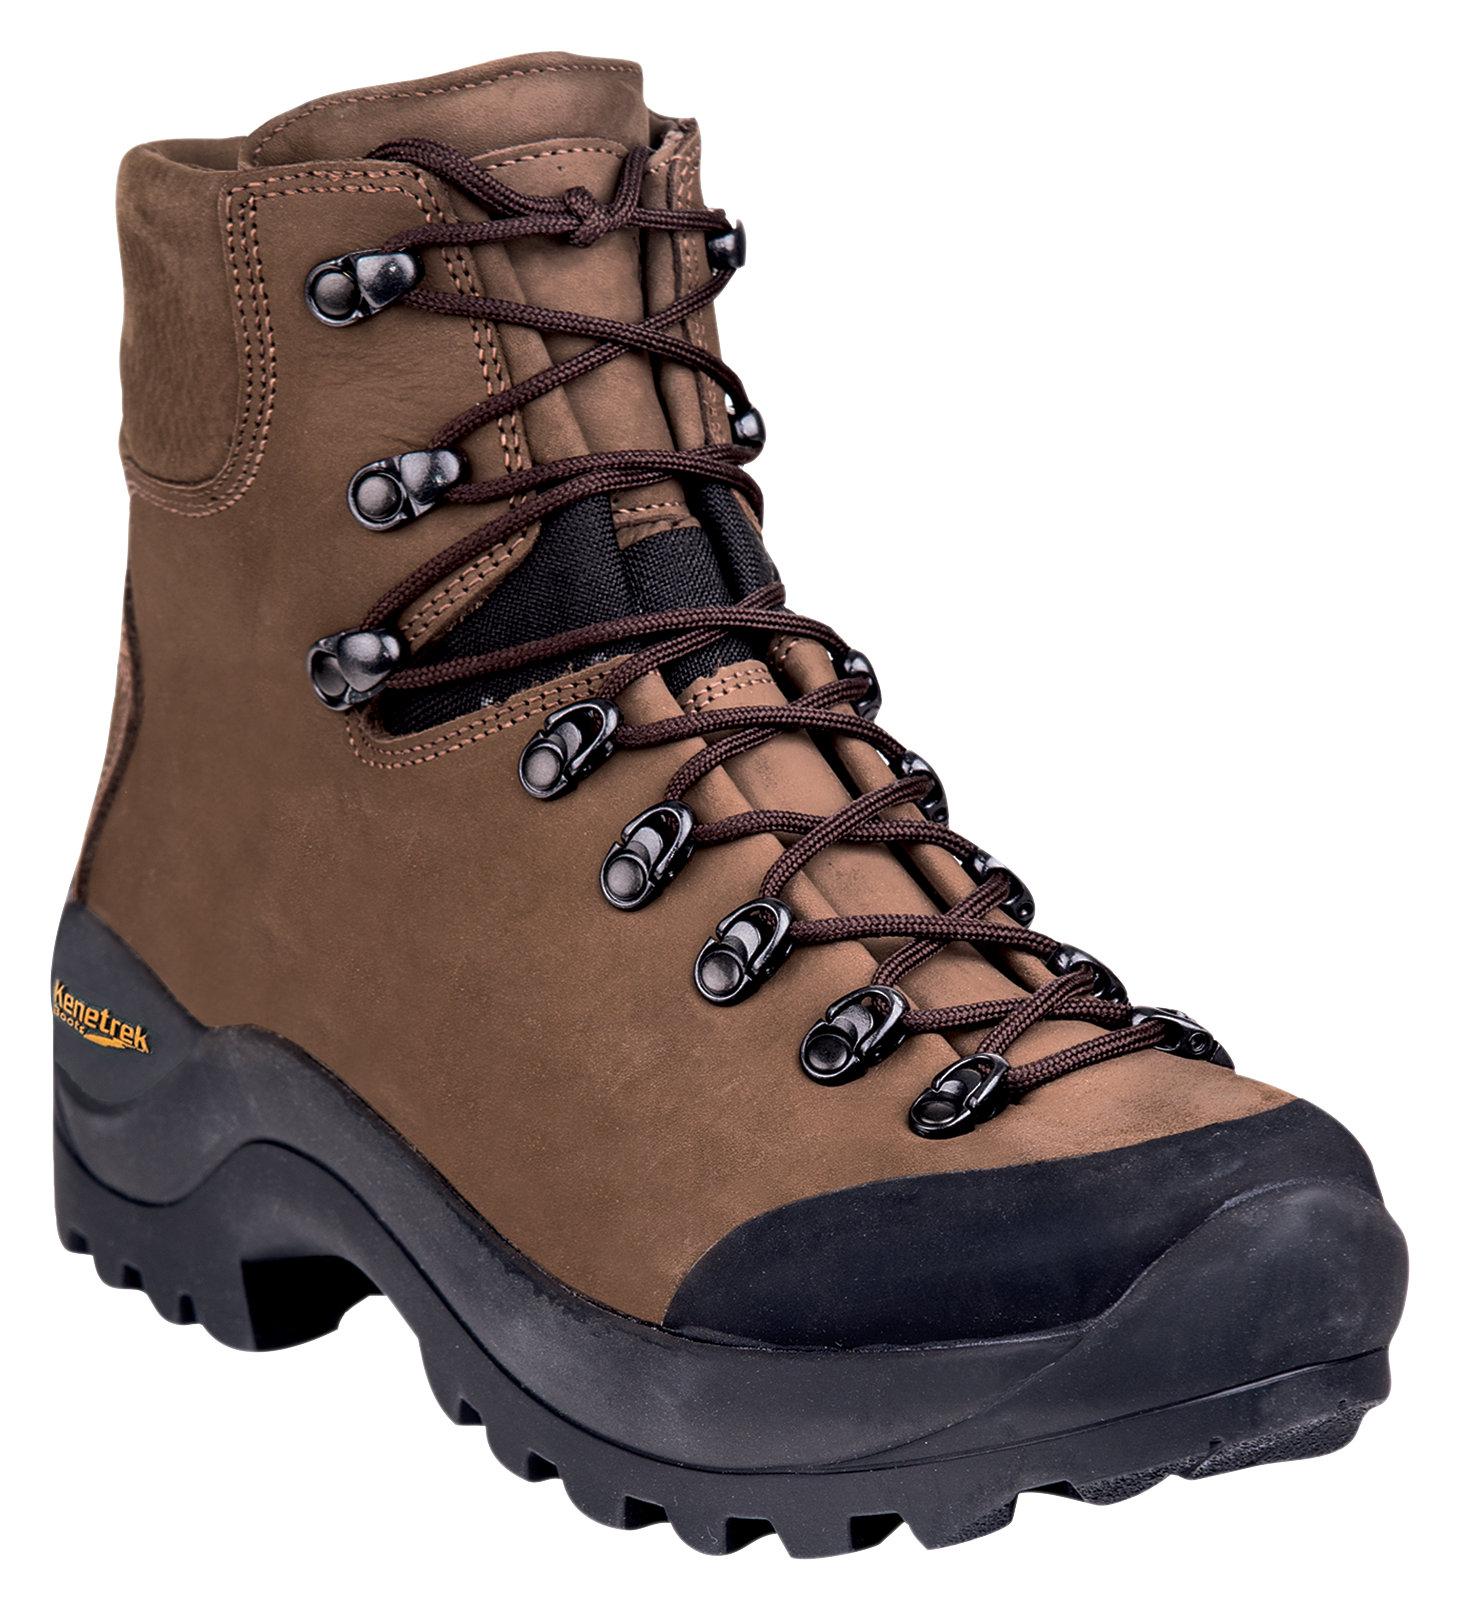 Kenetrek Desert Guide Hunting Boots for Men - Brown - 8M